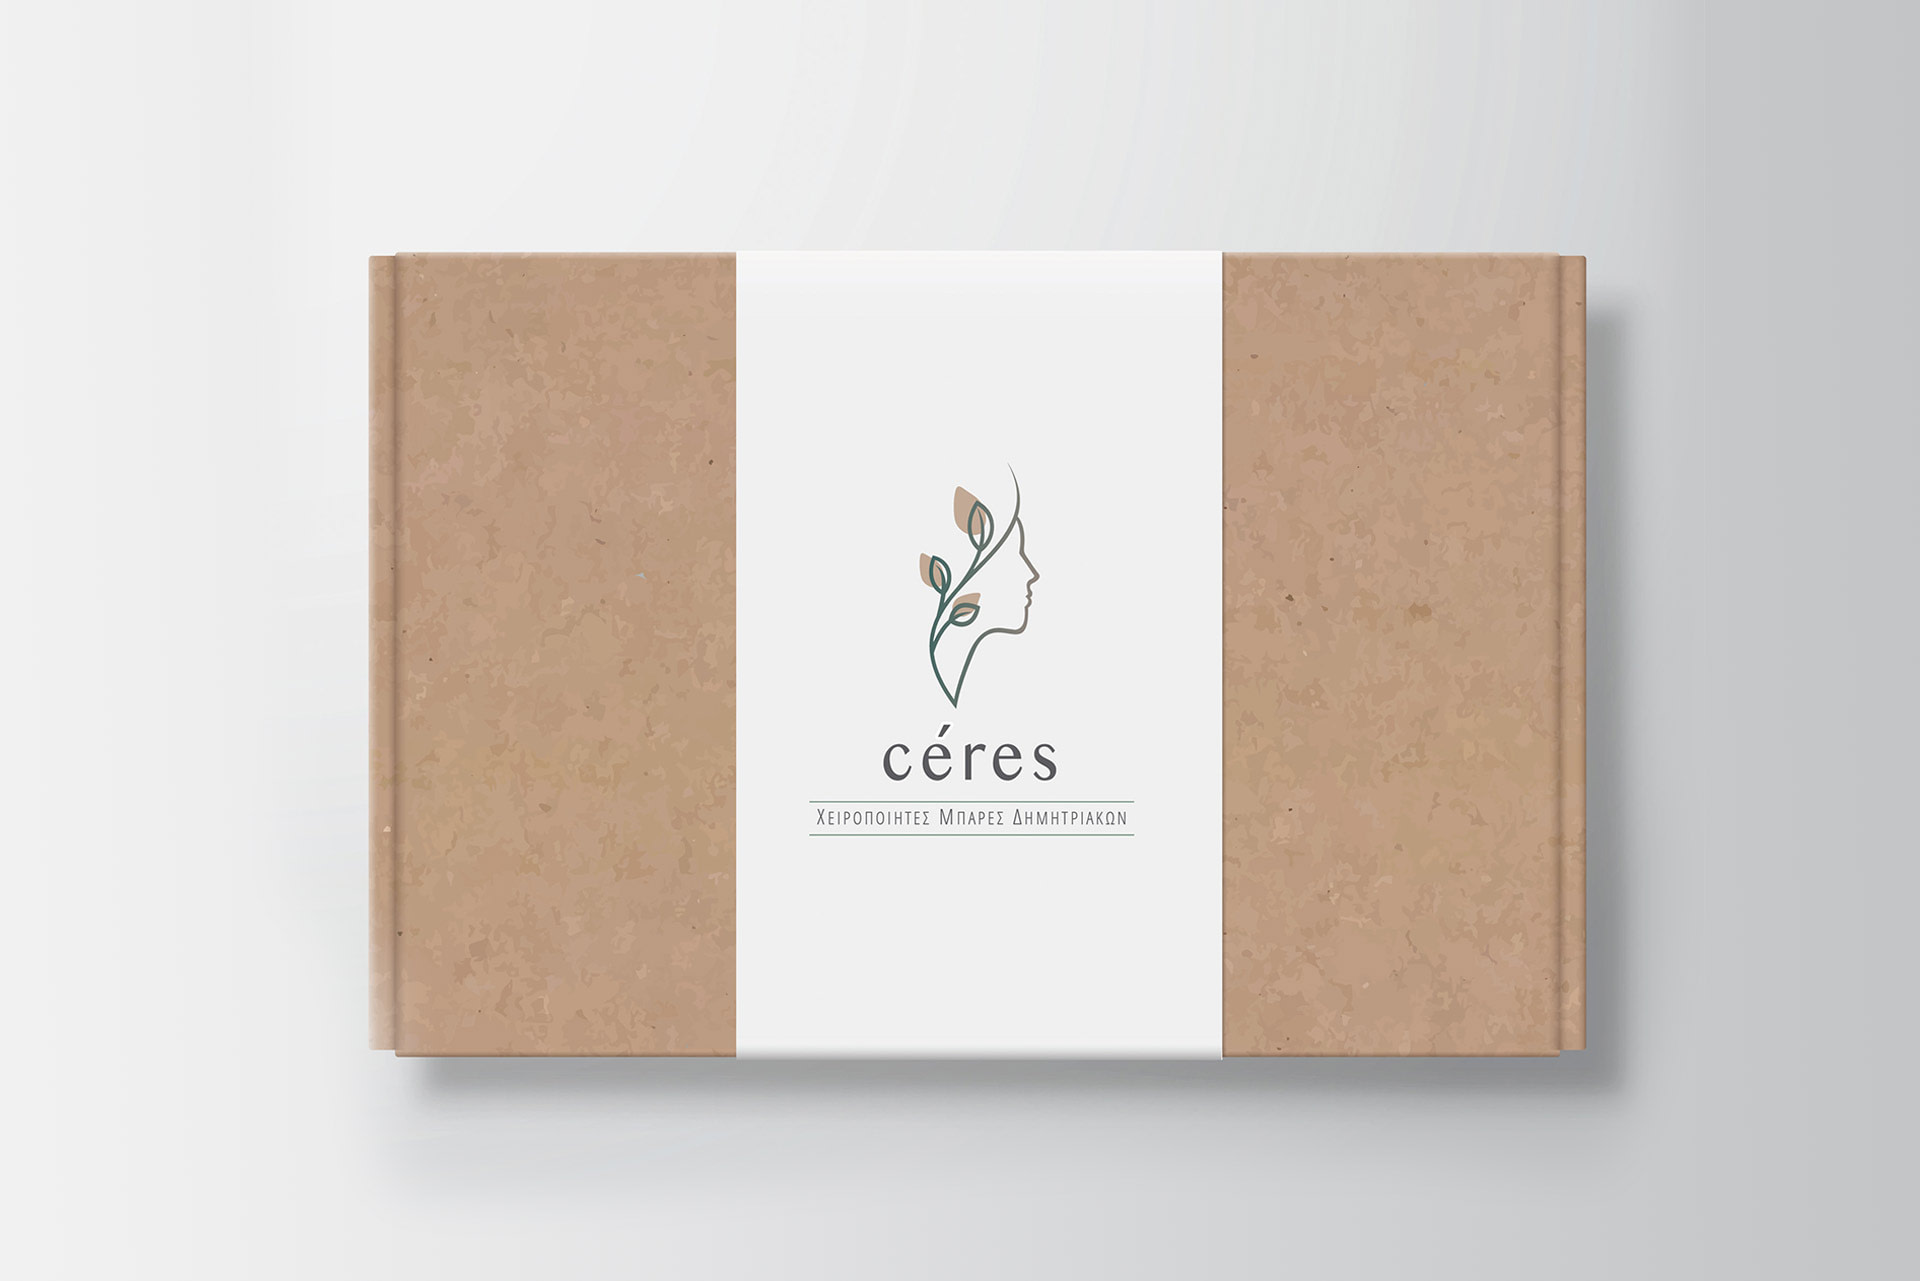 ceres-logo-in-box-old